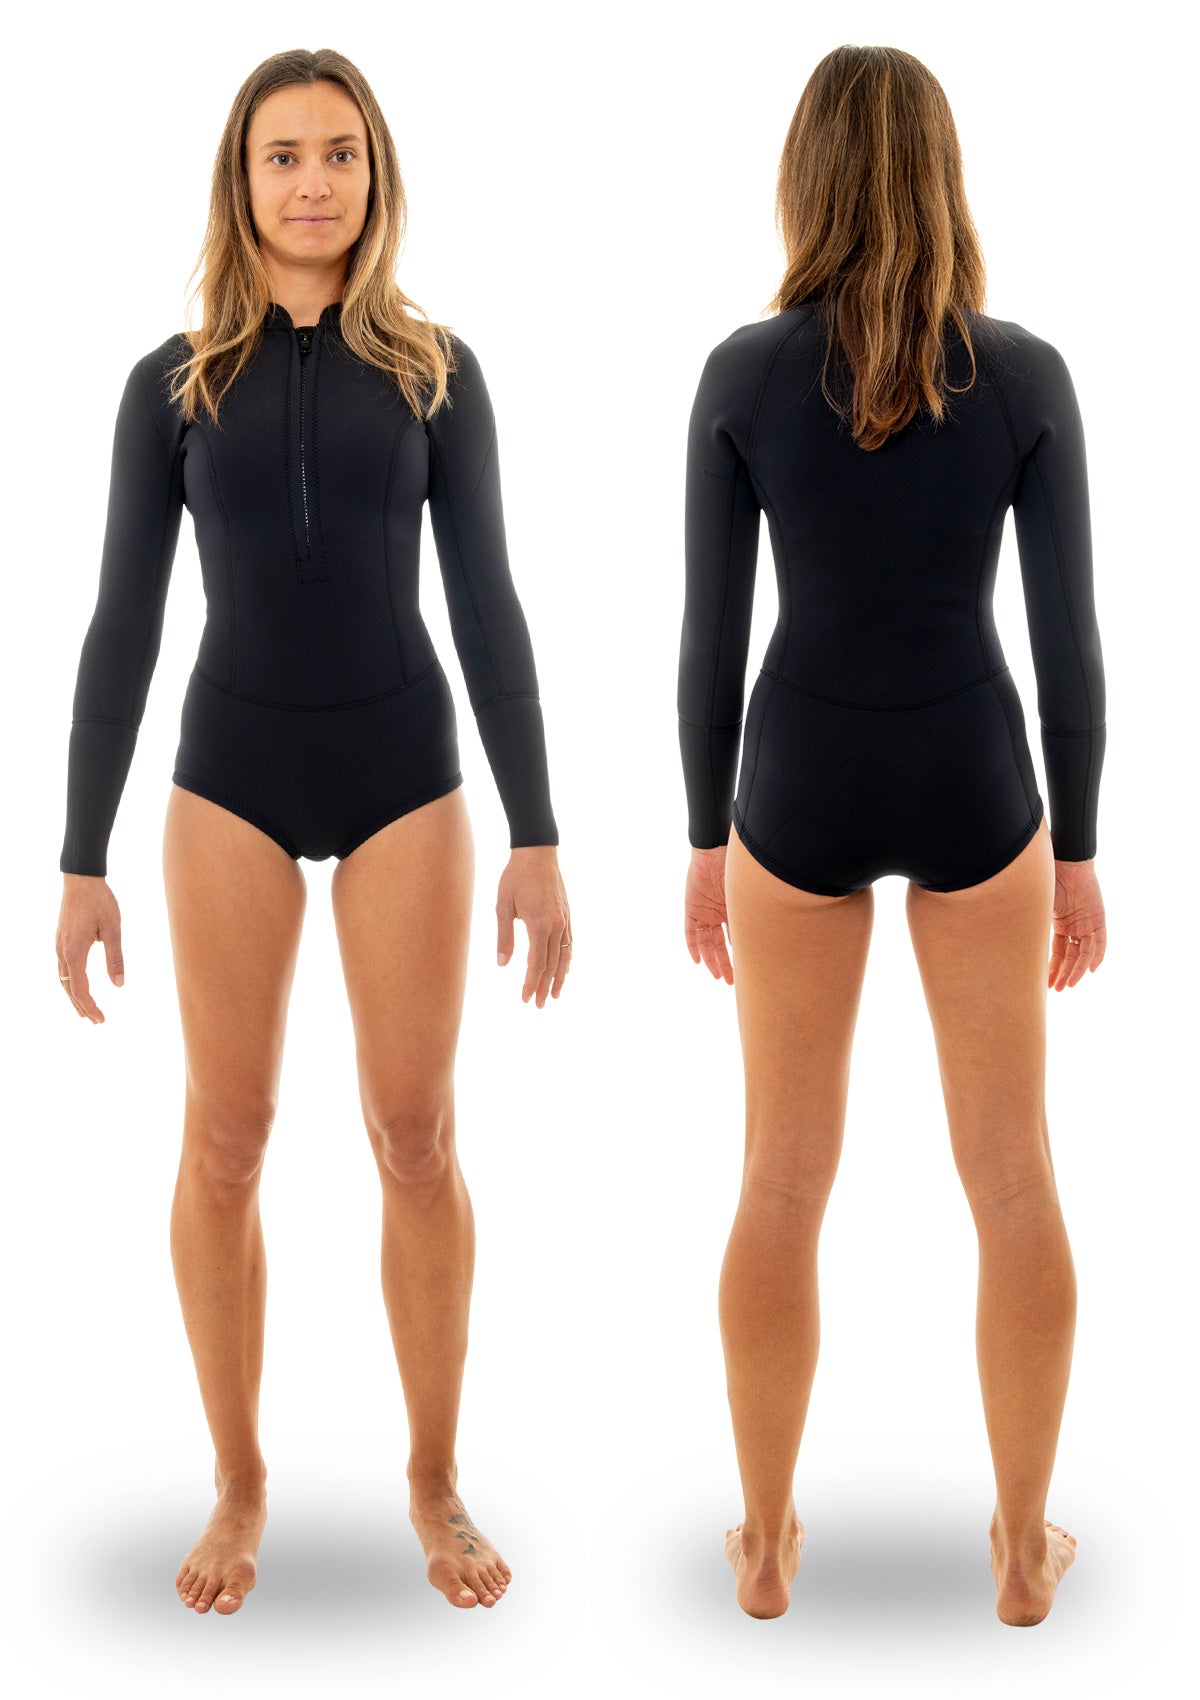 needessentials womens 1.5mm front zip spring suit summer wetsuit